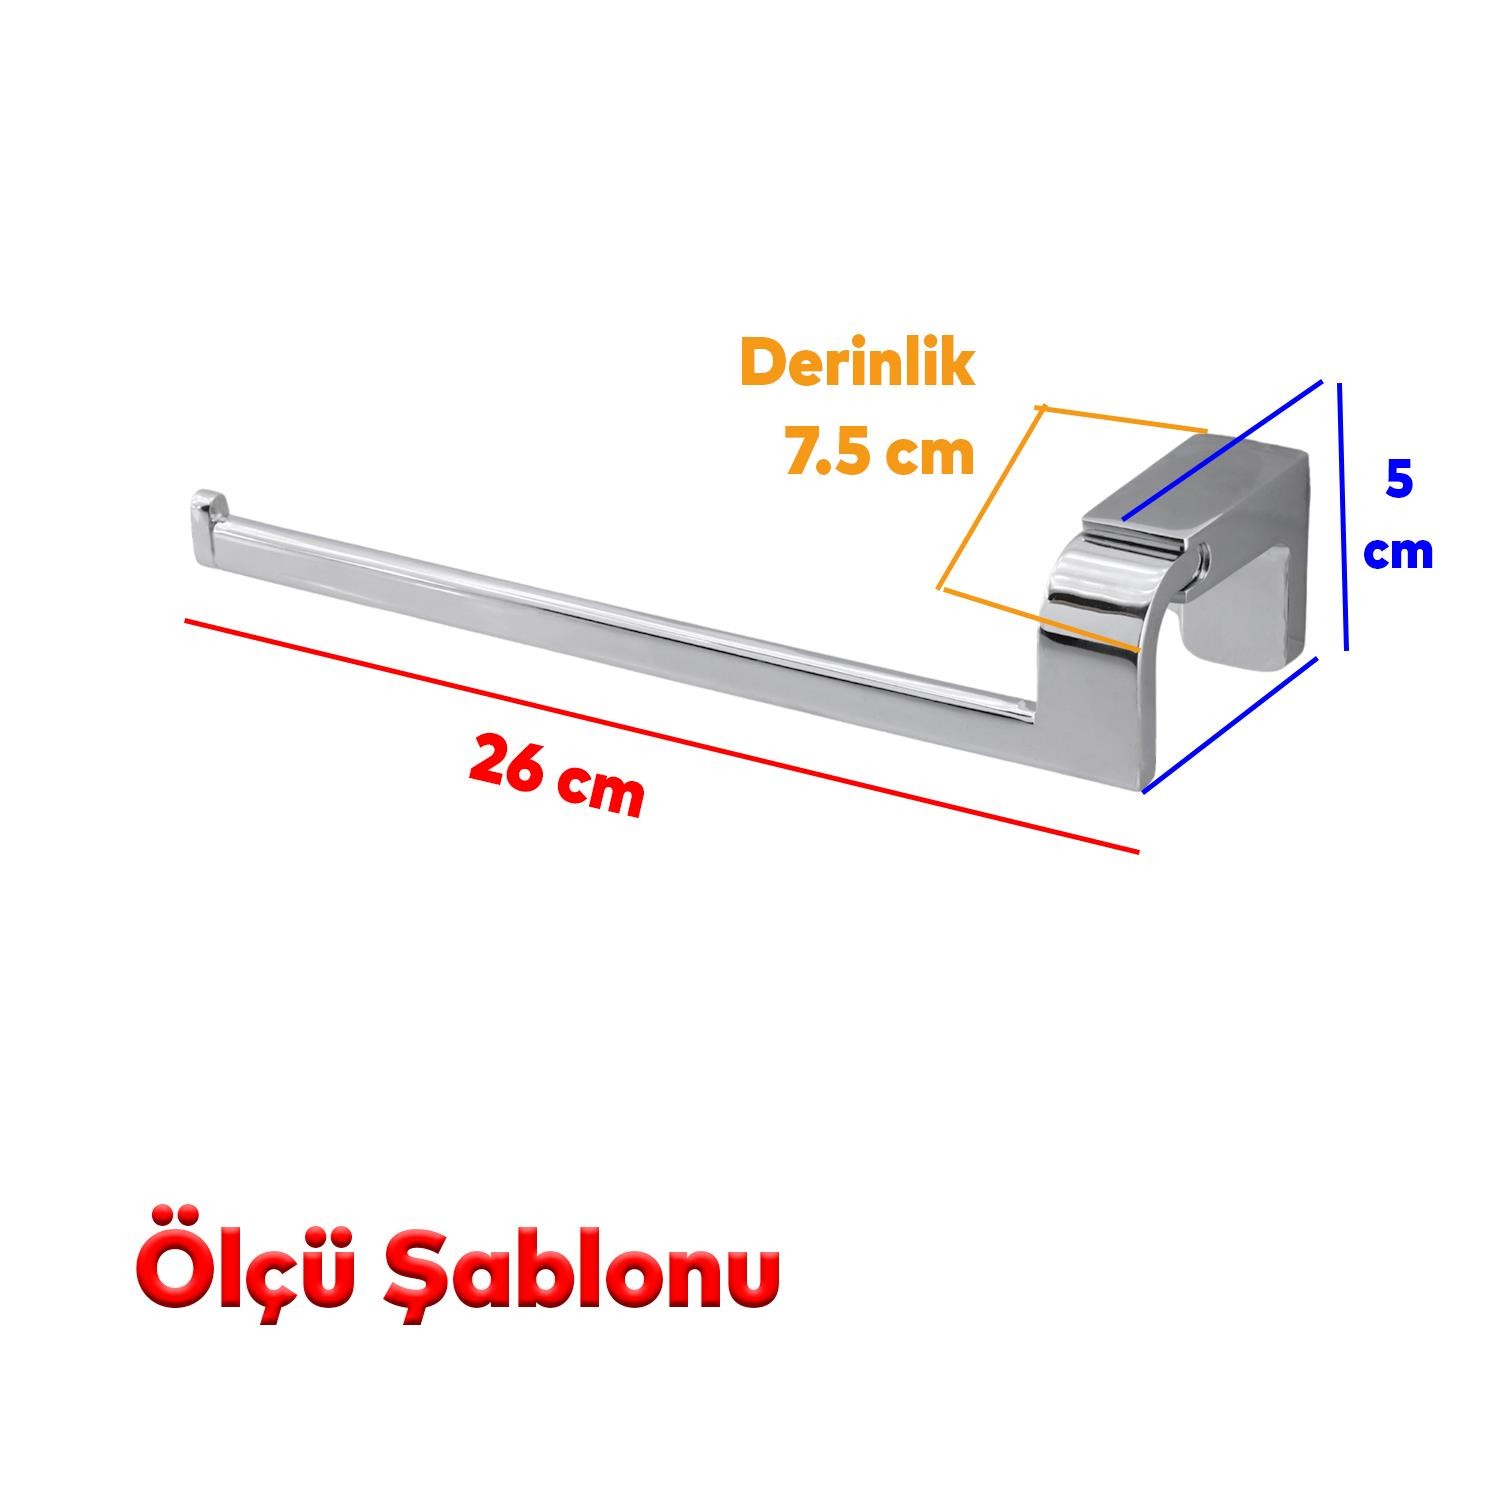 Banyo Lavabo Mutfak Aparat Uzun Kağıt Havluluk Açık Kağıtlık 26 cm Metal Sağlam Krom